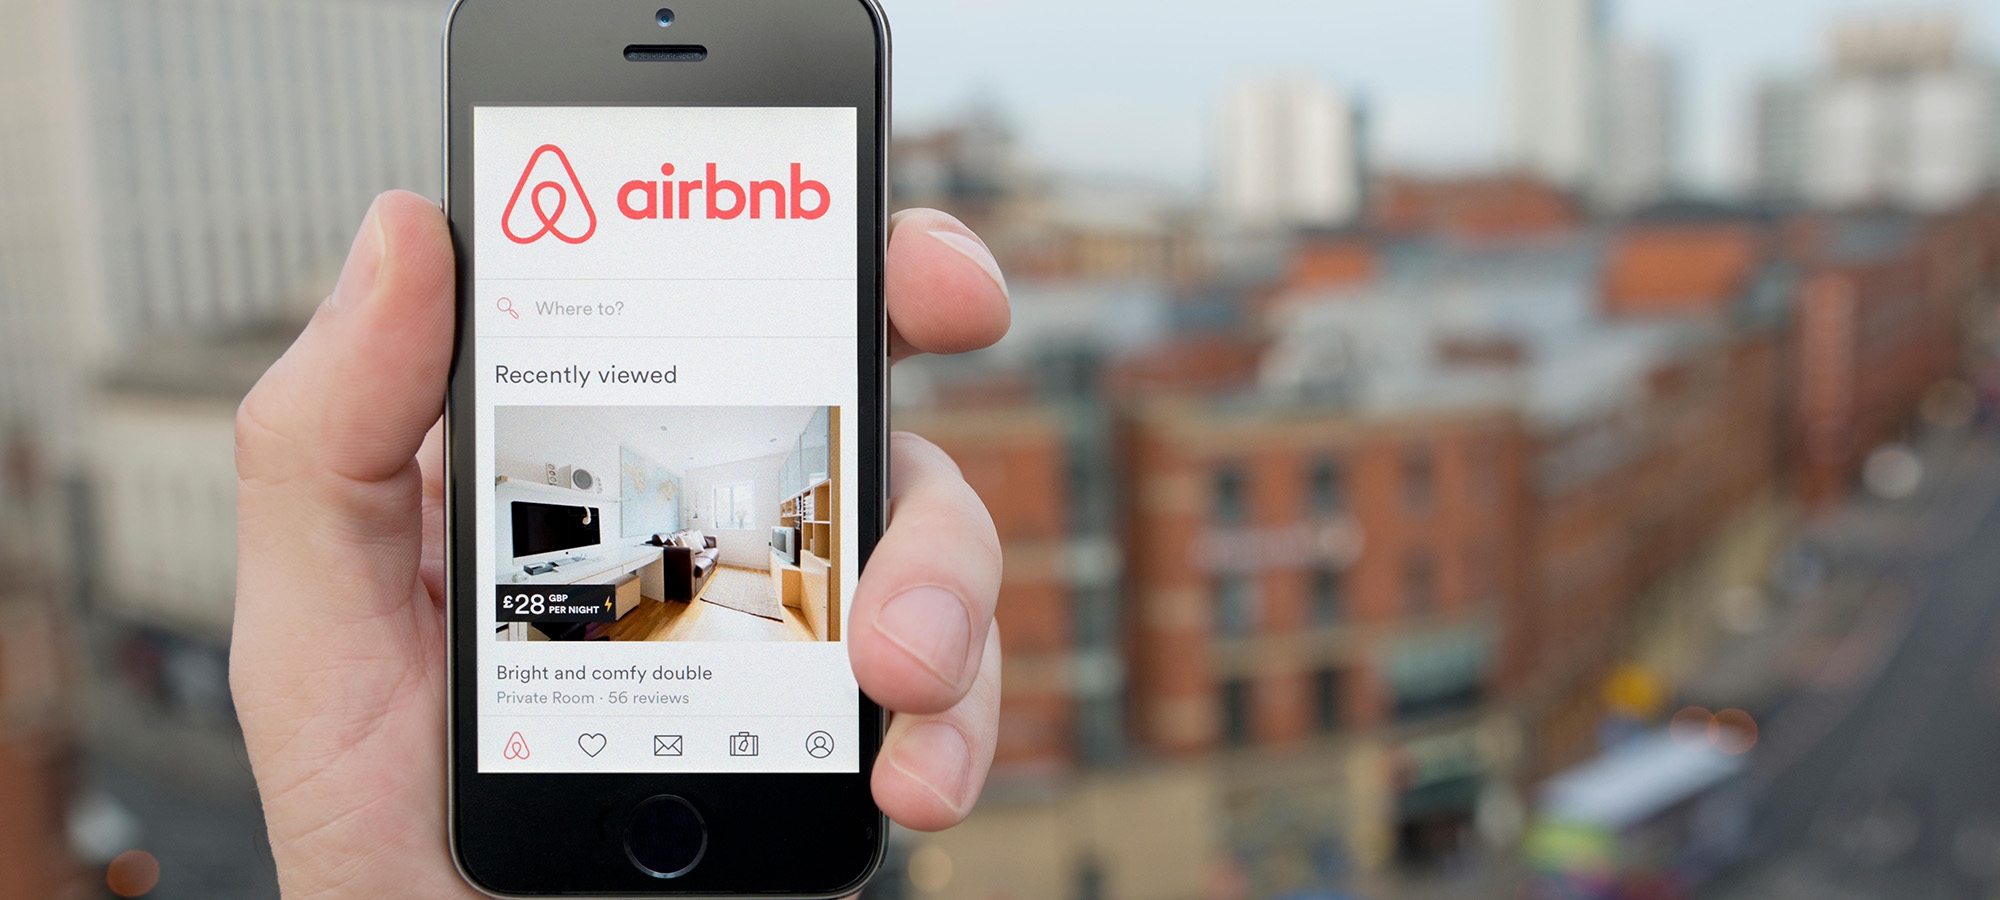 wanna build an app like airbnb